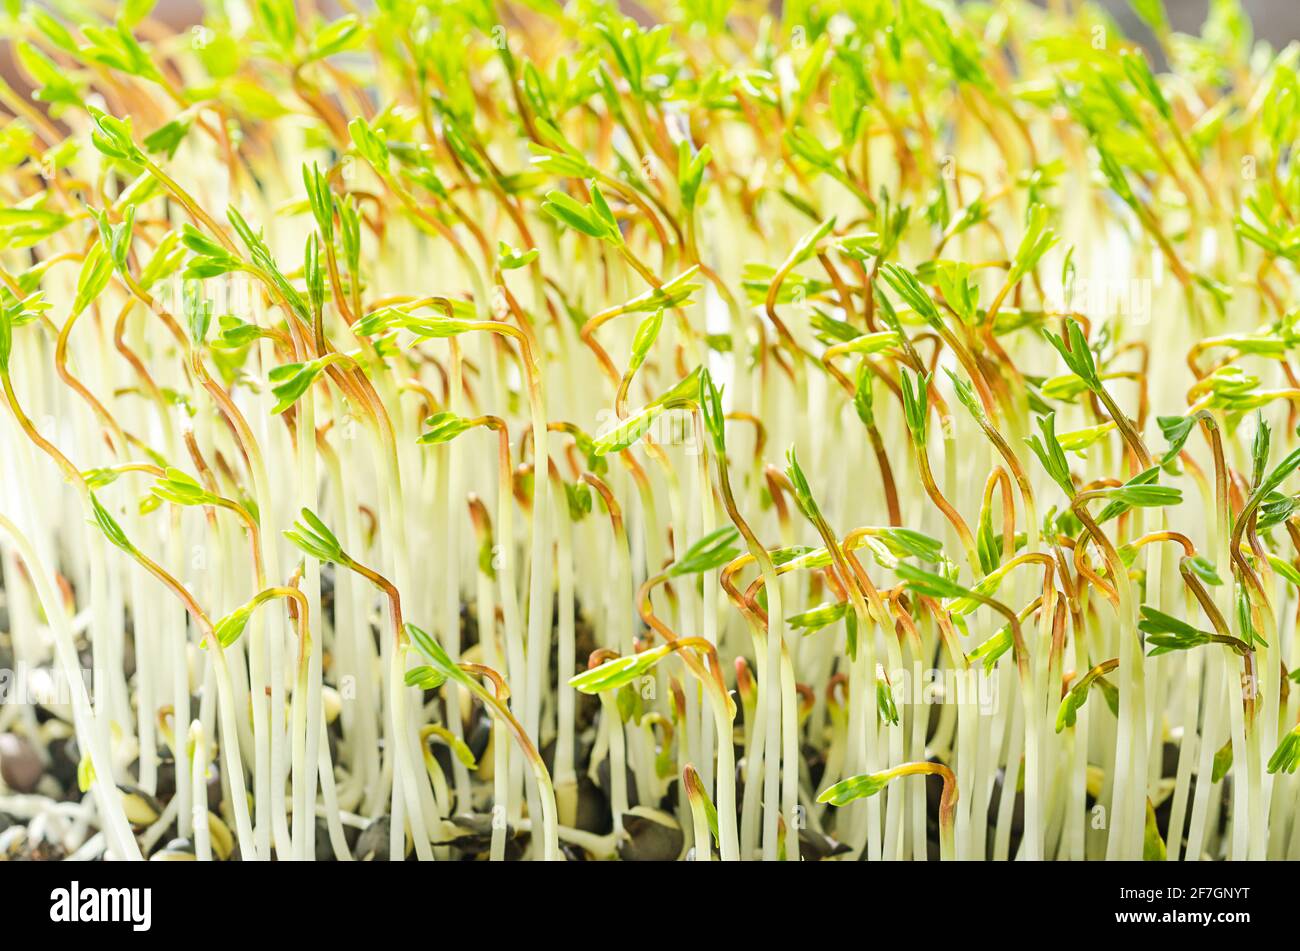 Gekeimt Beluga Linsen, Microgreens wachsen in hellem Sonnenlicht. Grüne Triebe von schwarzen Linsen, Setzlingen und jungen Pflanzen. Stockfoto